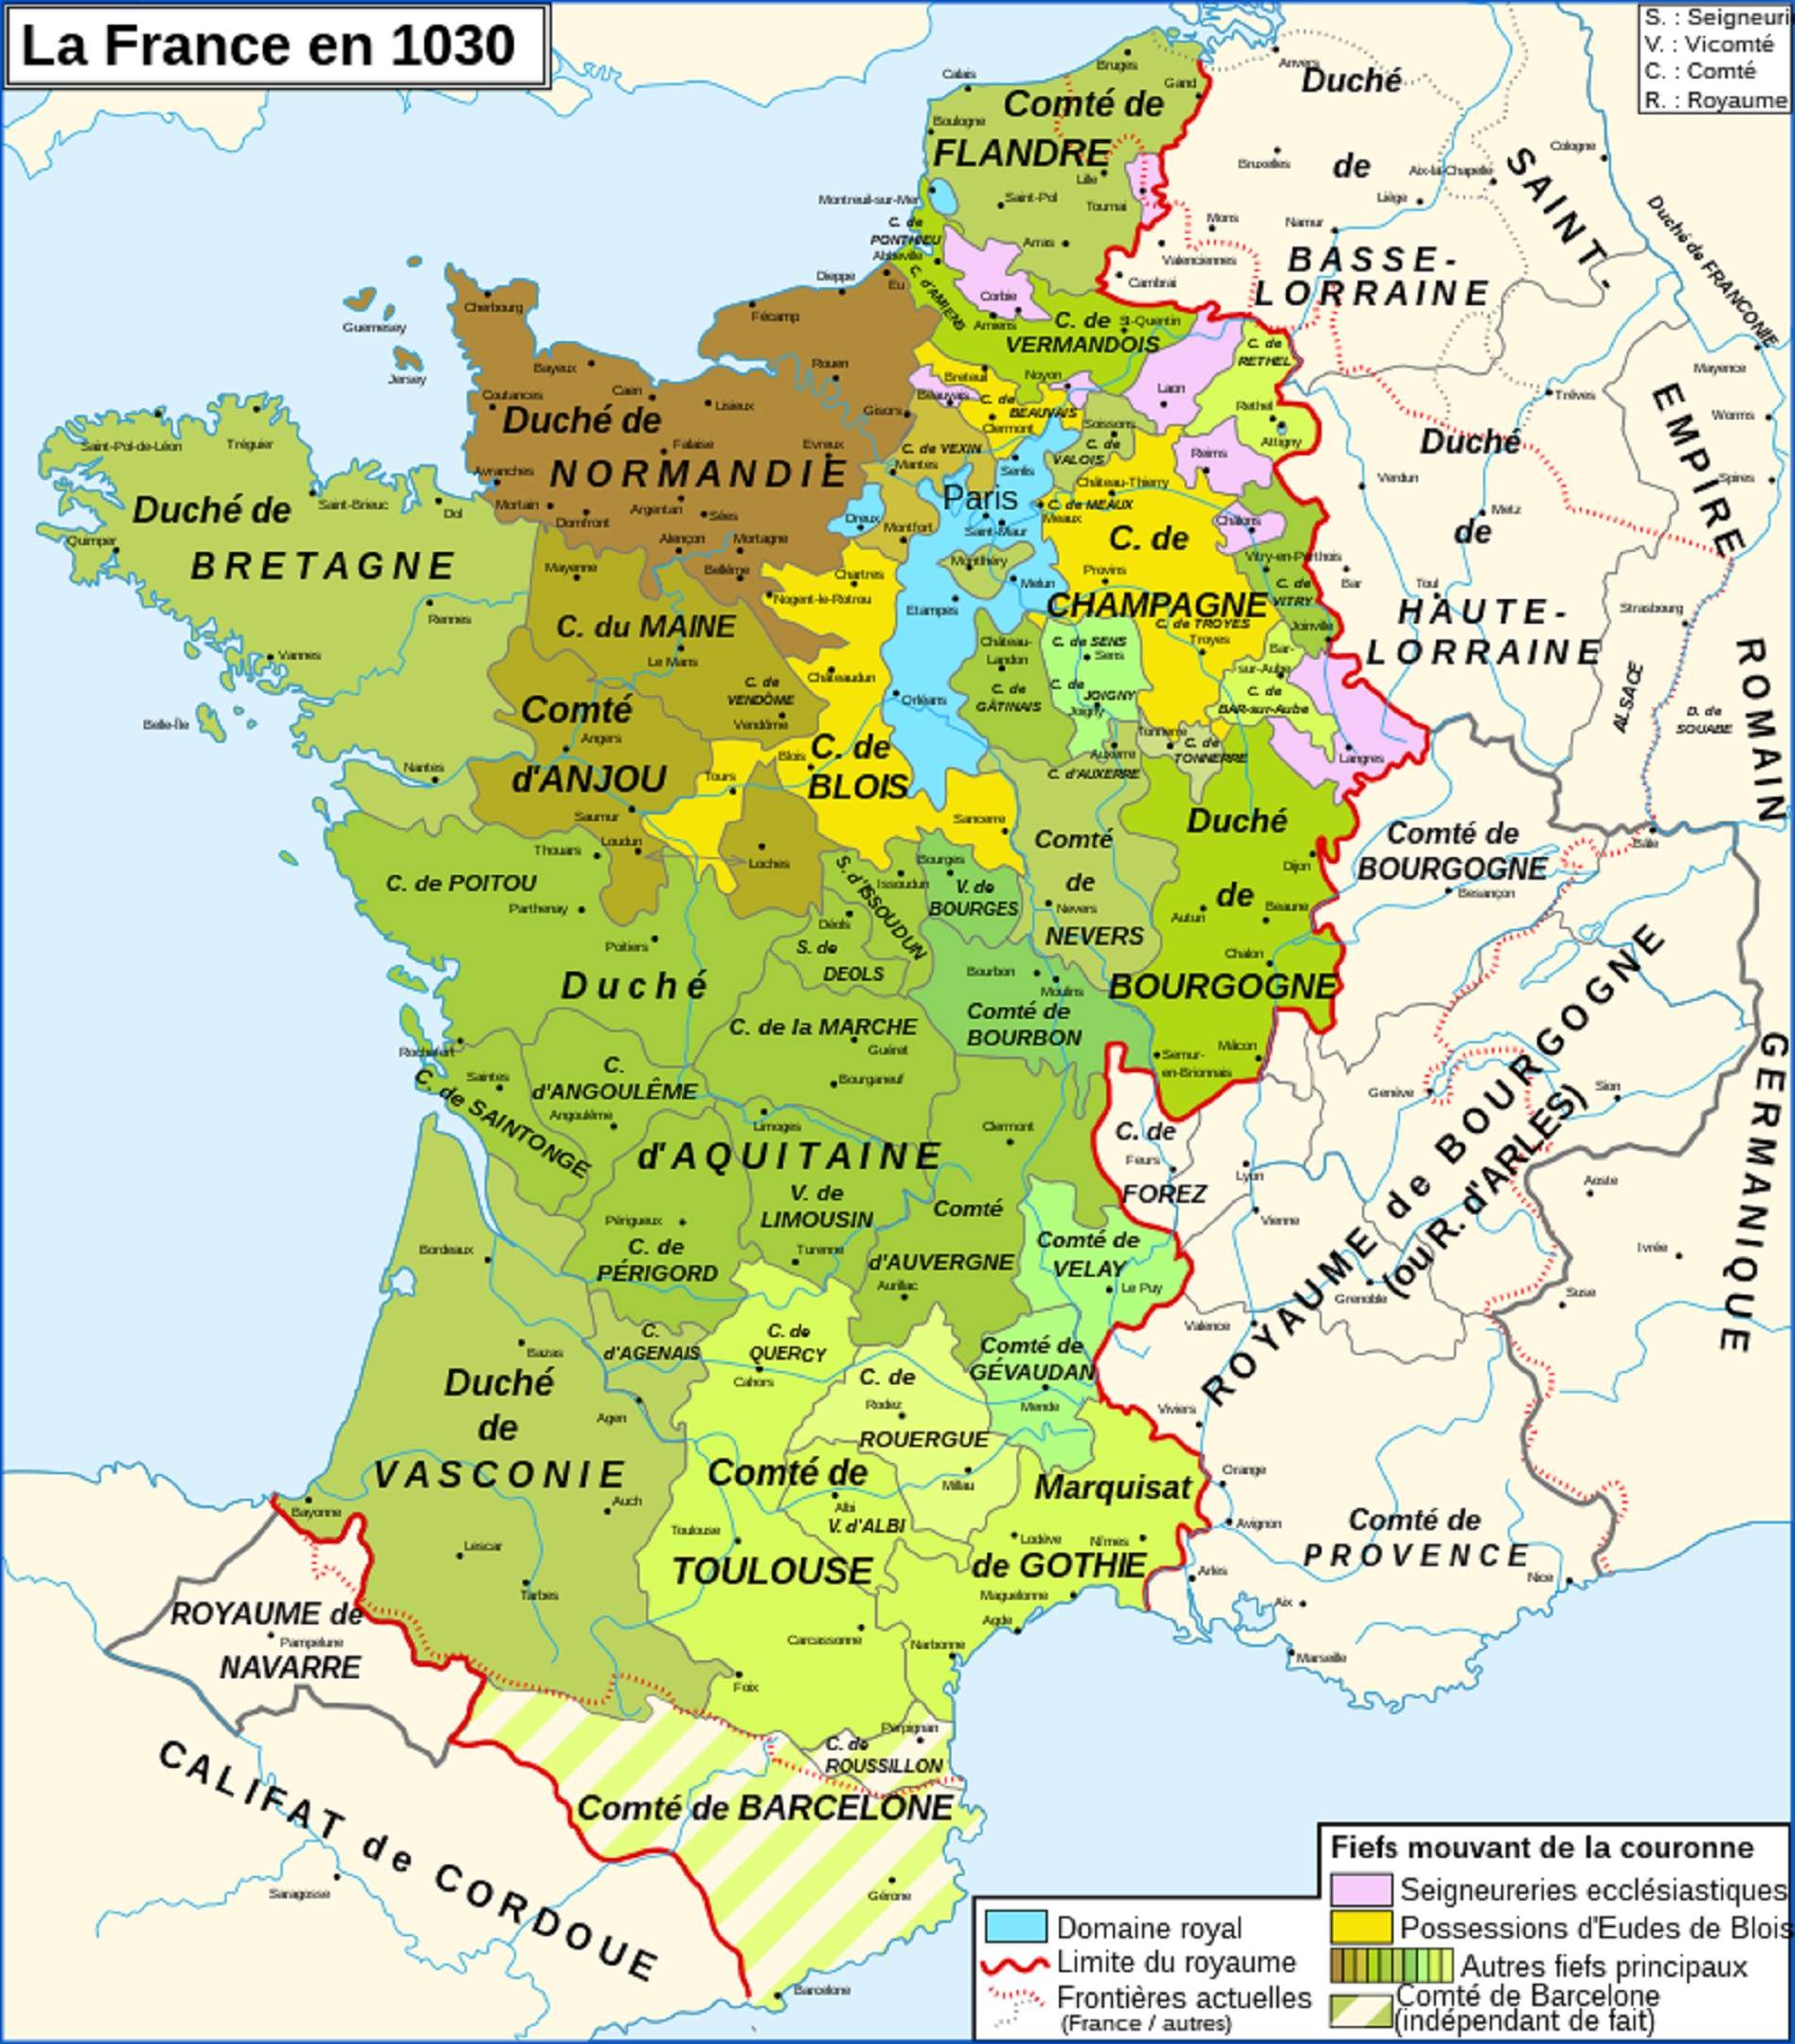 Mapa del reino de Francia a cavball del año 1000. Fuente Cartas de France